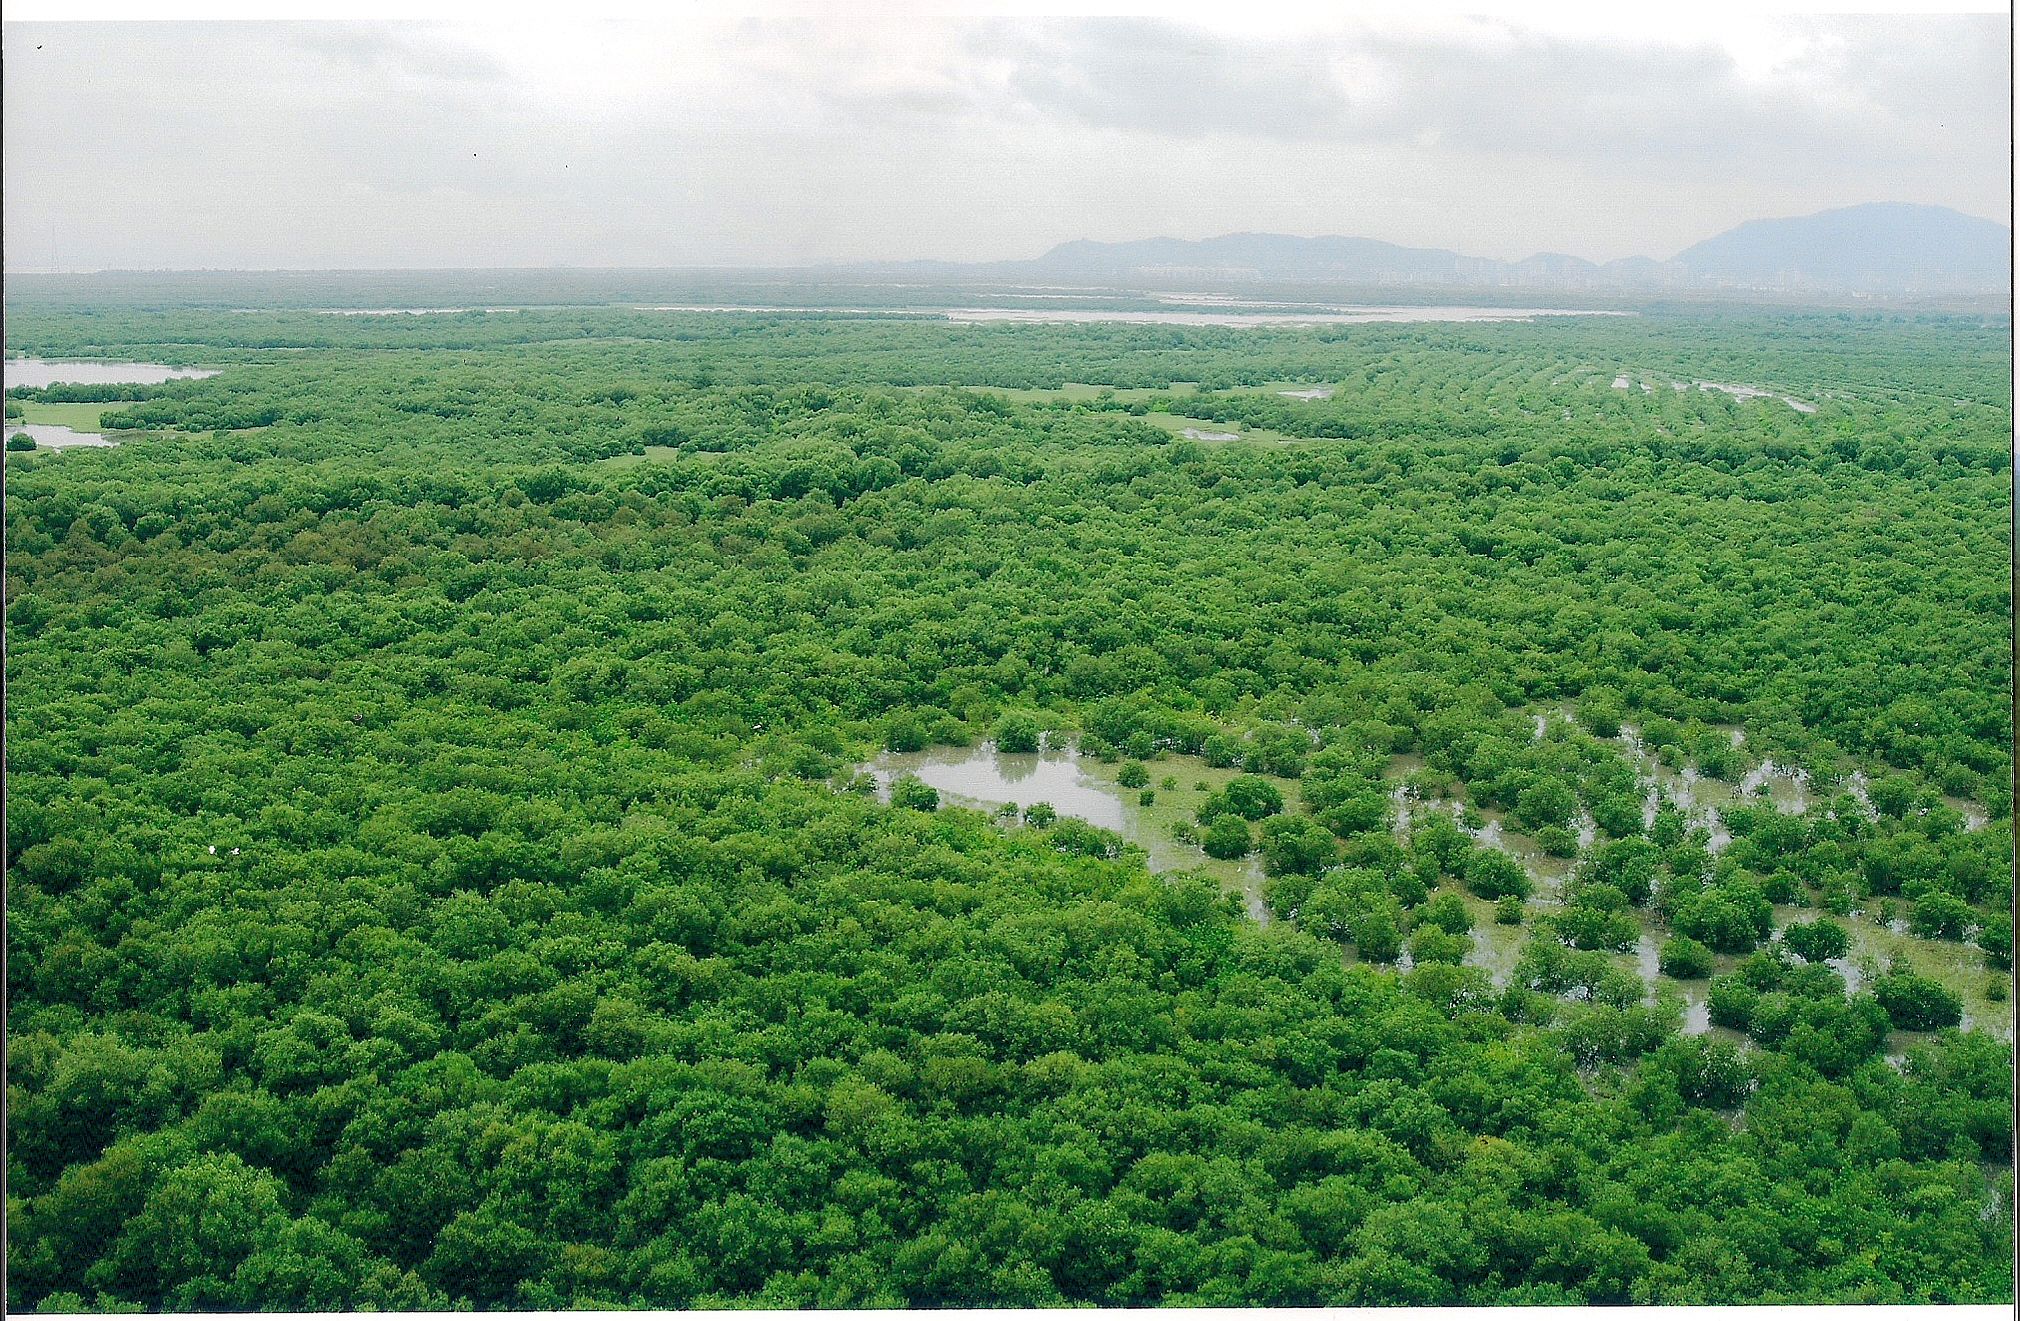 Mumbai Mangroves